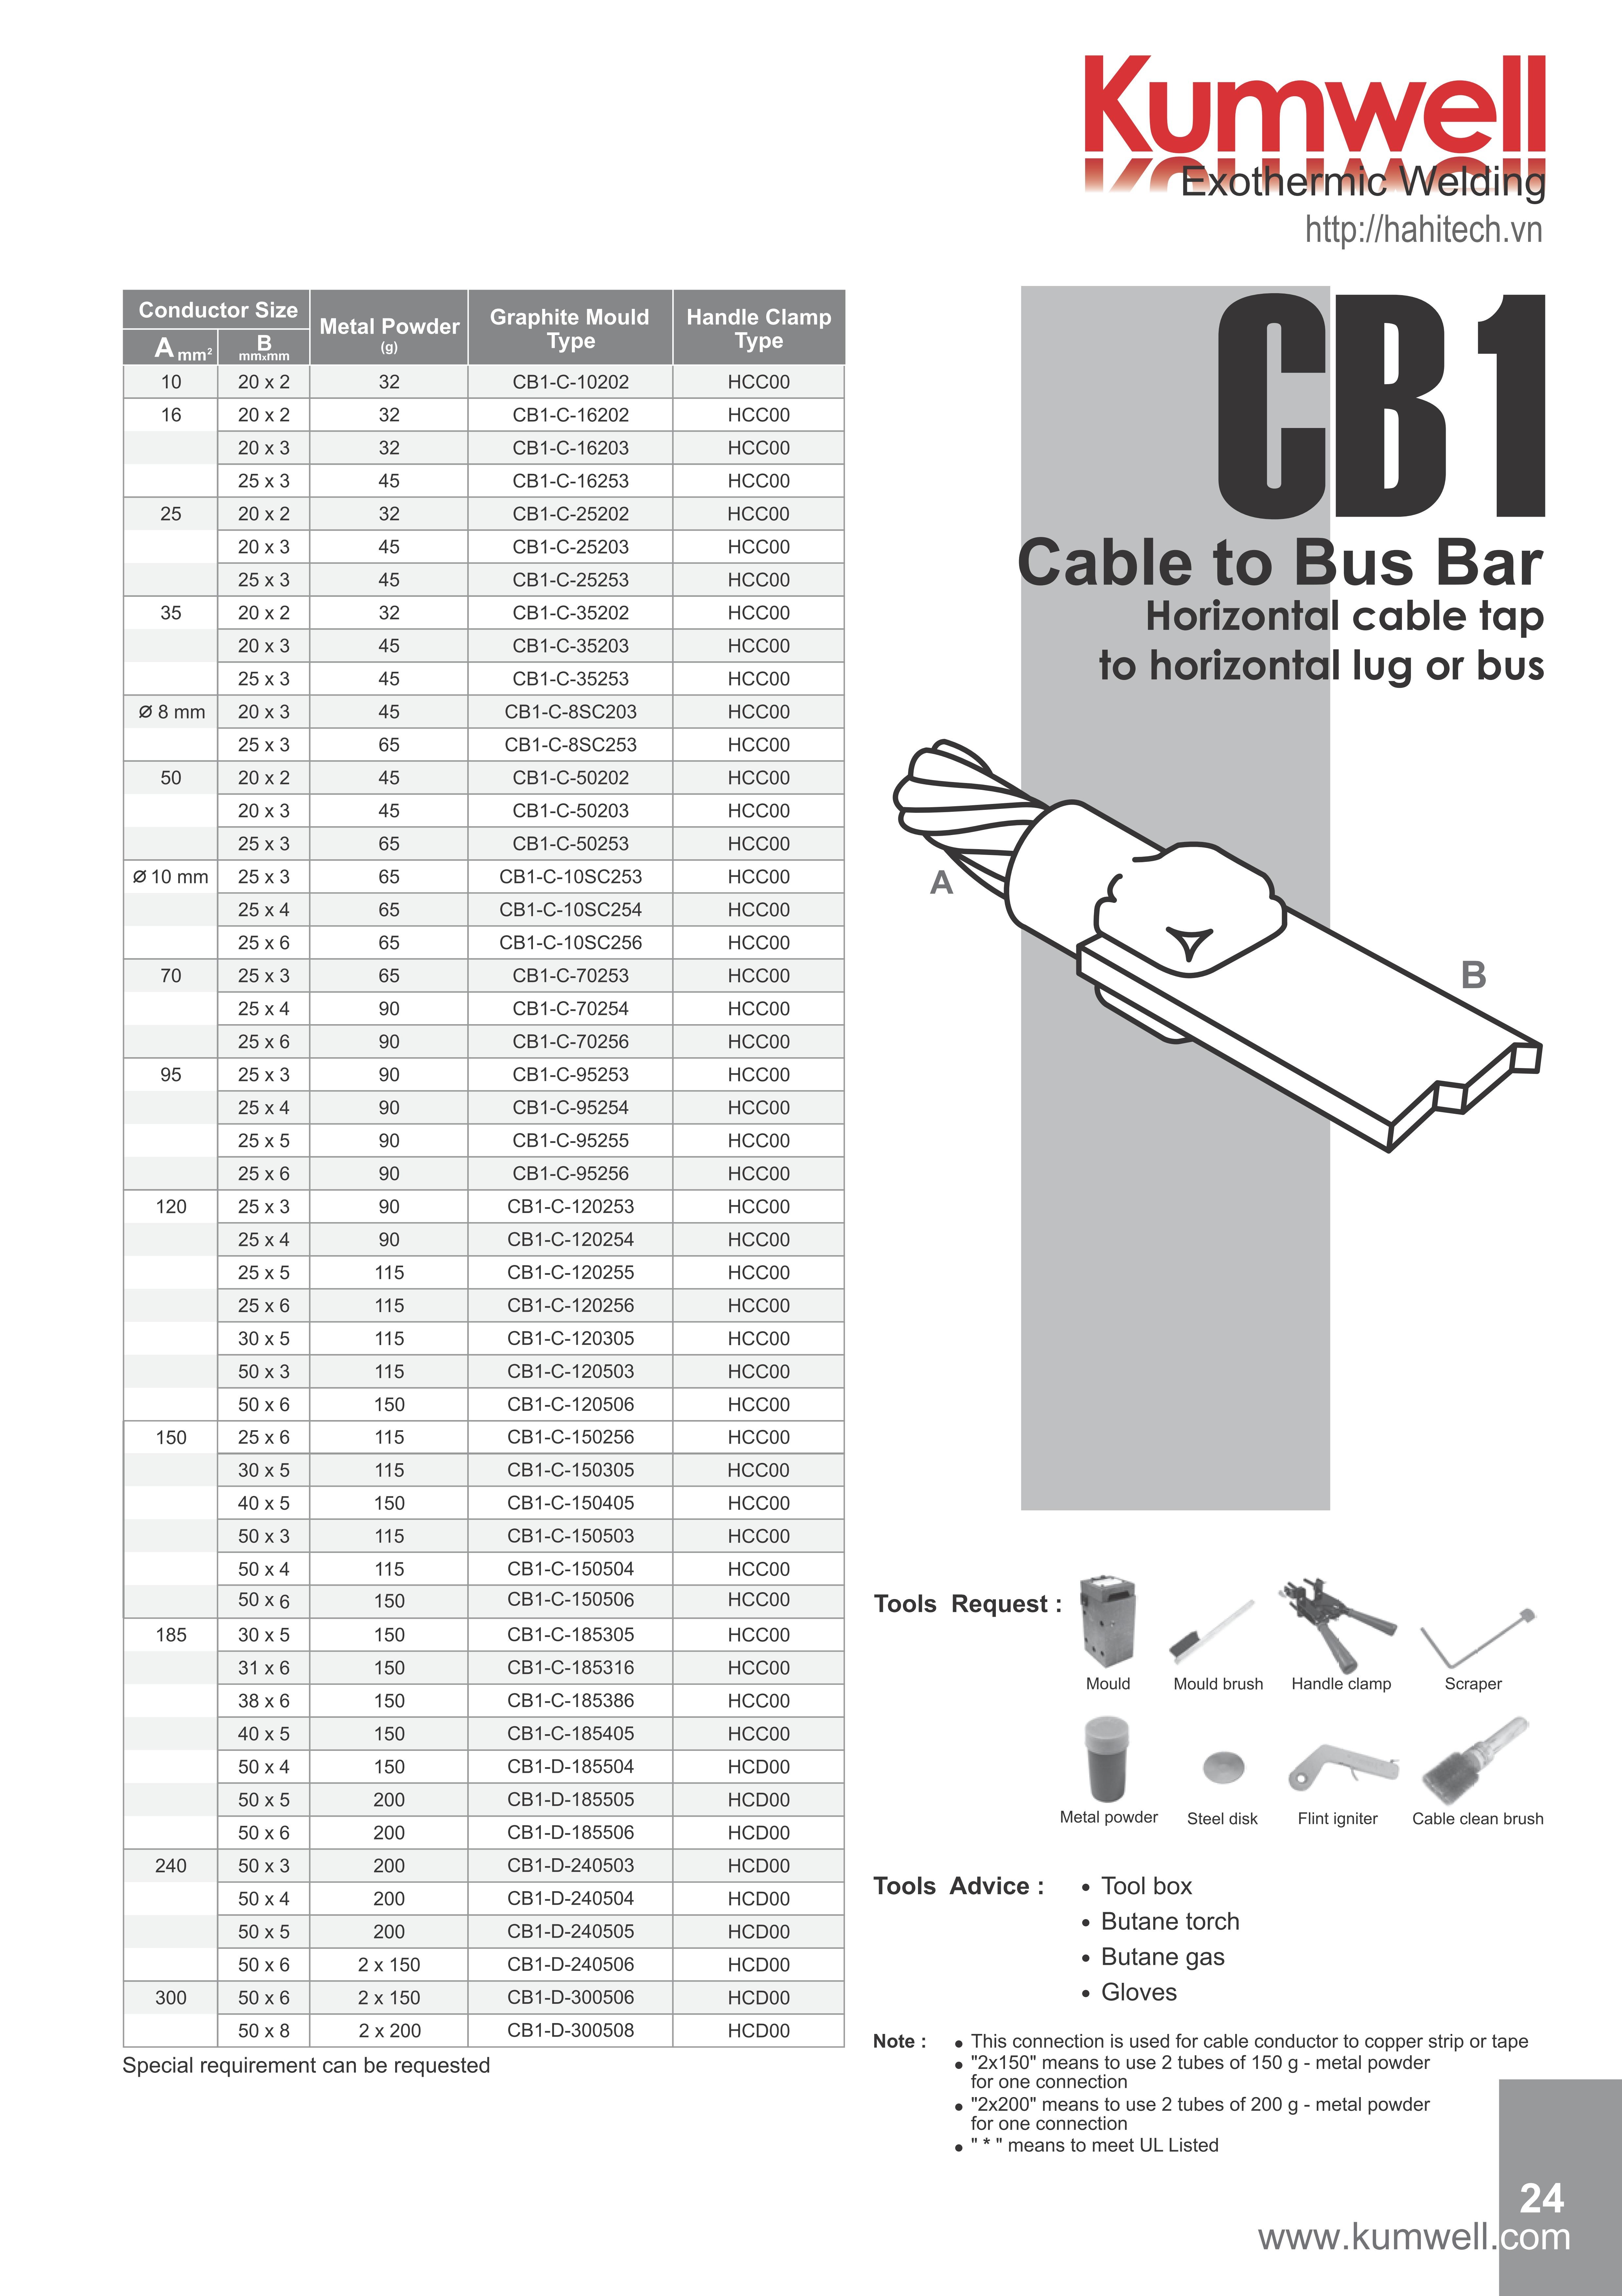 CB1-C-120305, khuôn hàn hóa nhiệt nối thẳng đấu đầu cáp đồng trần M120 - 120mm2 với băng thanh đồng 30x5, khuôn hàn hóa nhiệt